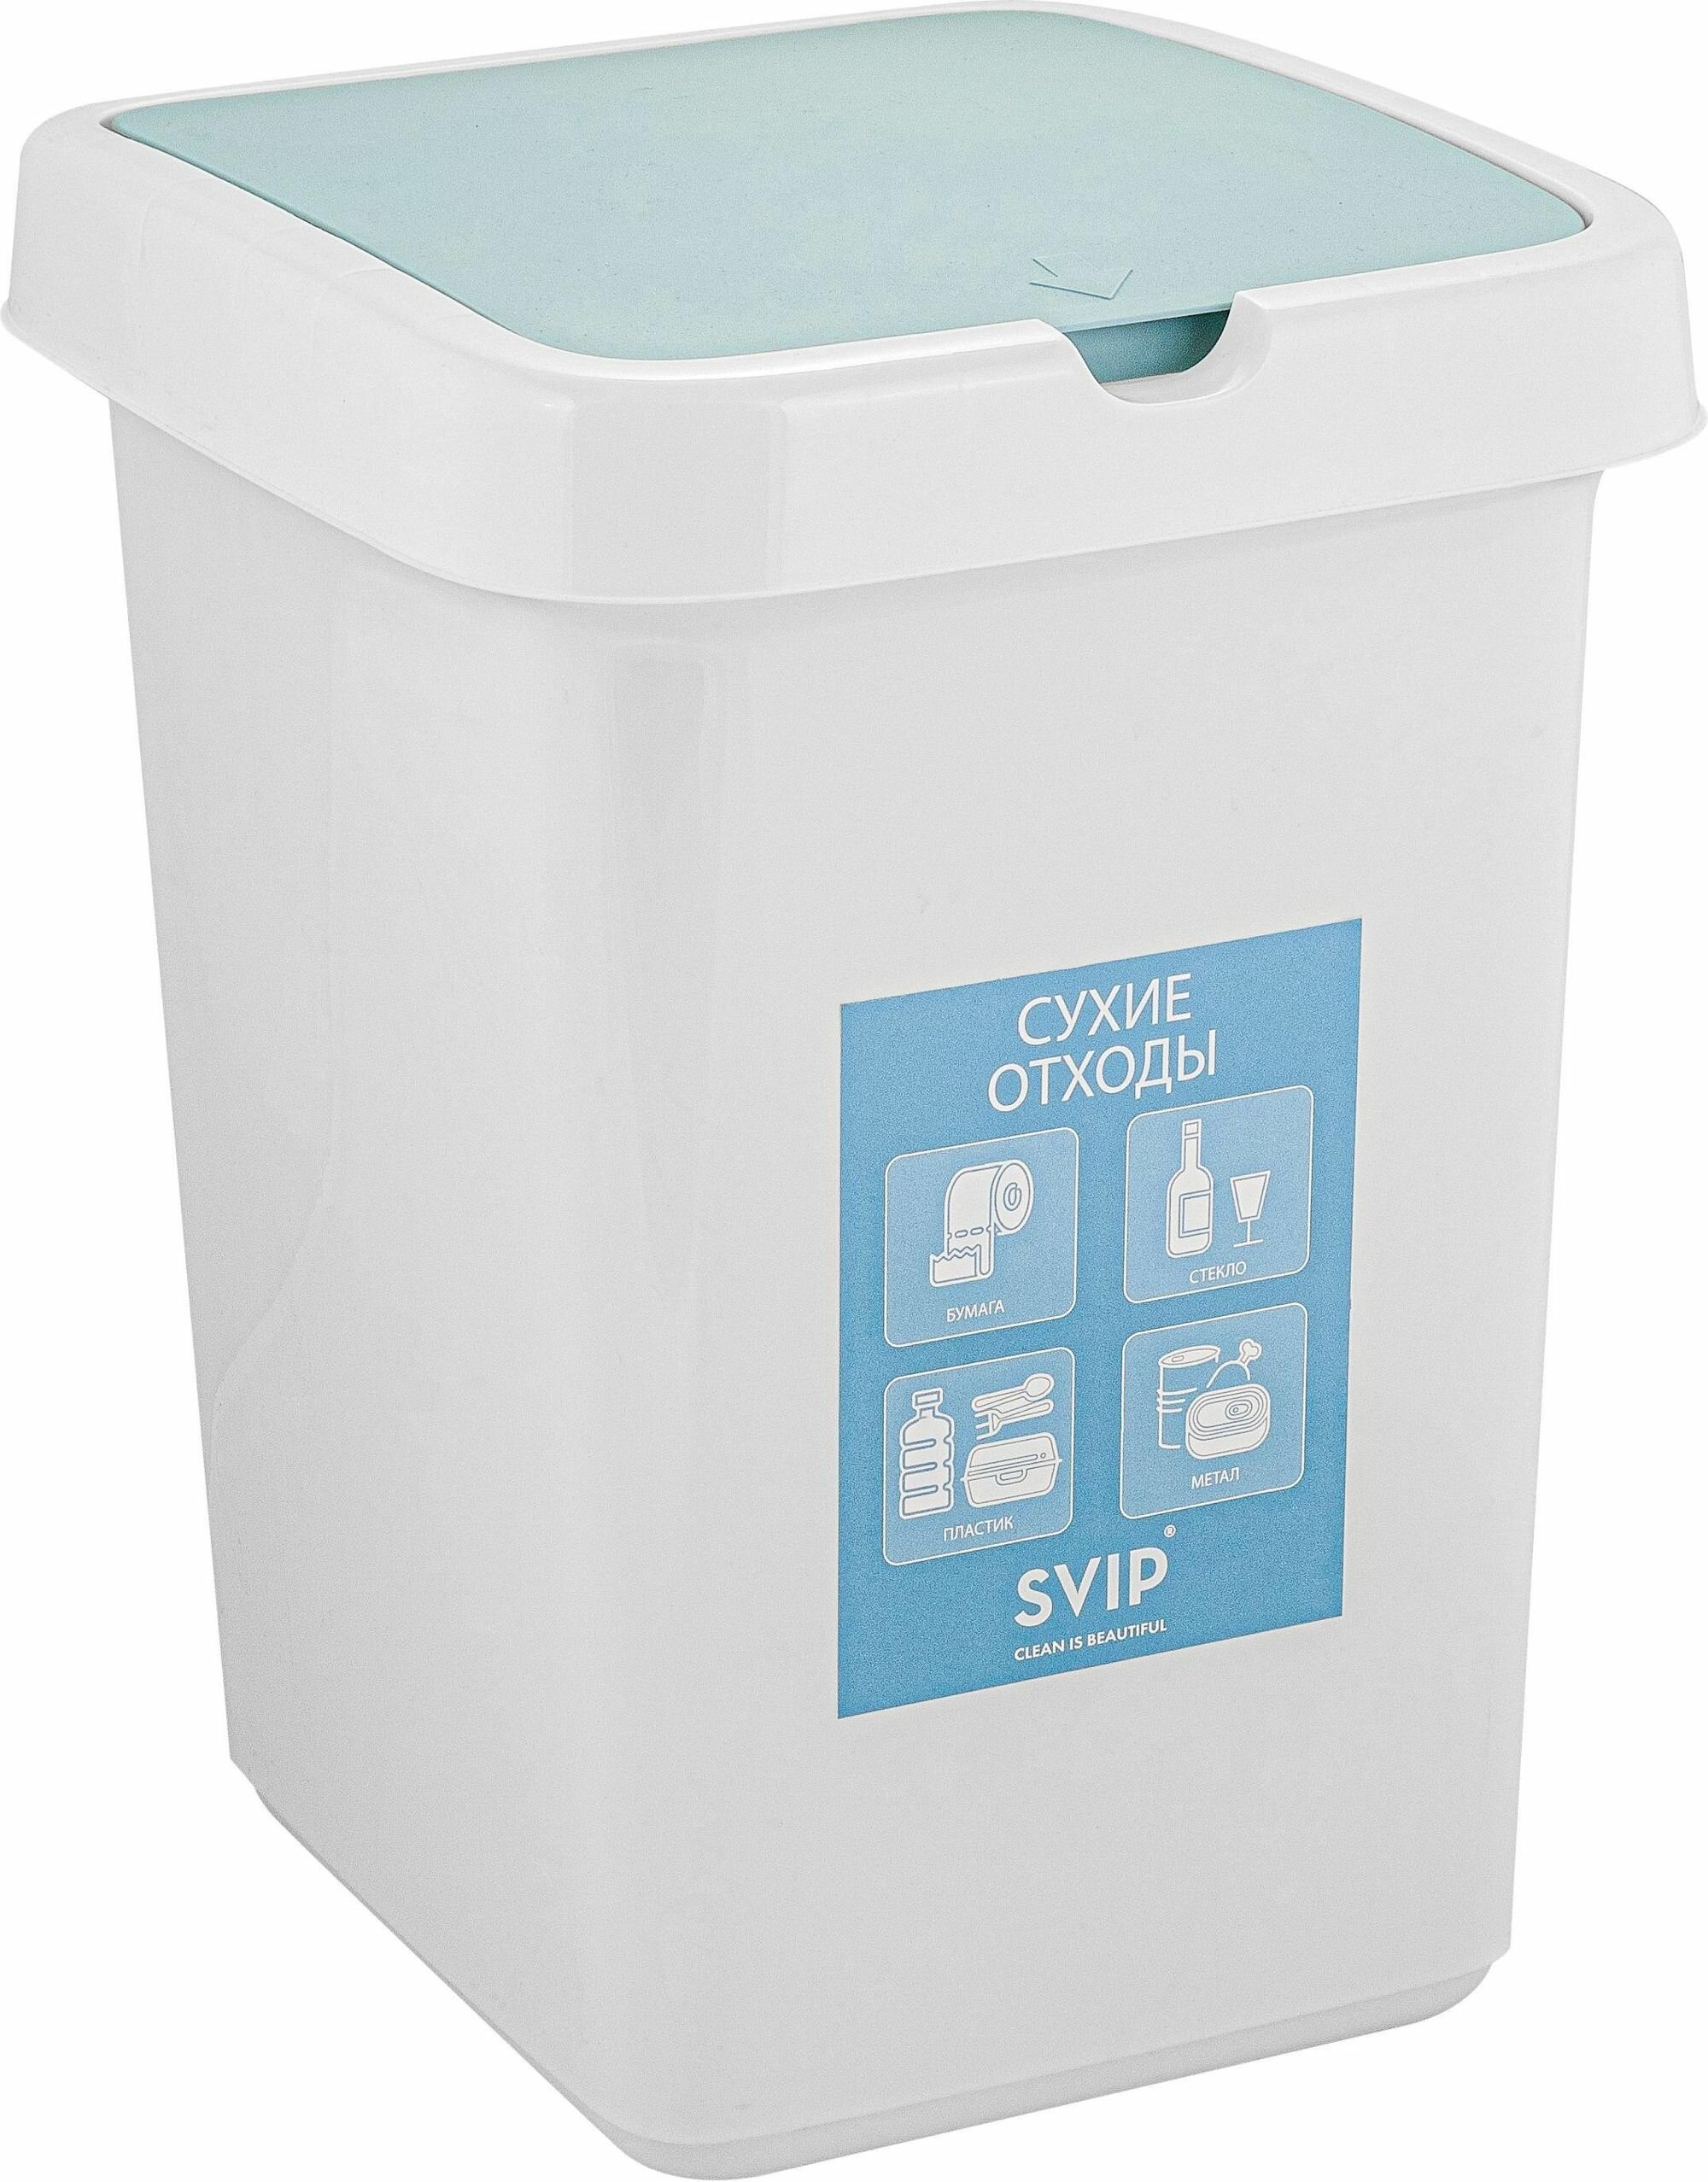 Svip Контейнер для раздельного сбора мусора 25 л (сухие отходы) .